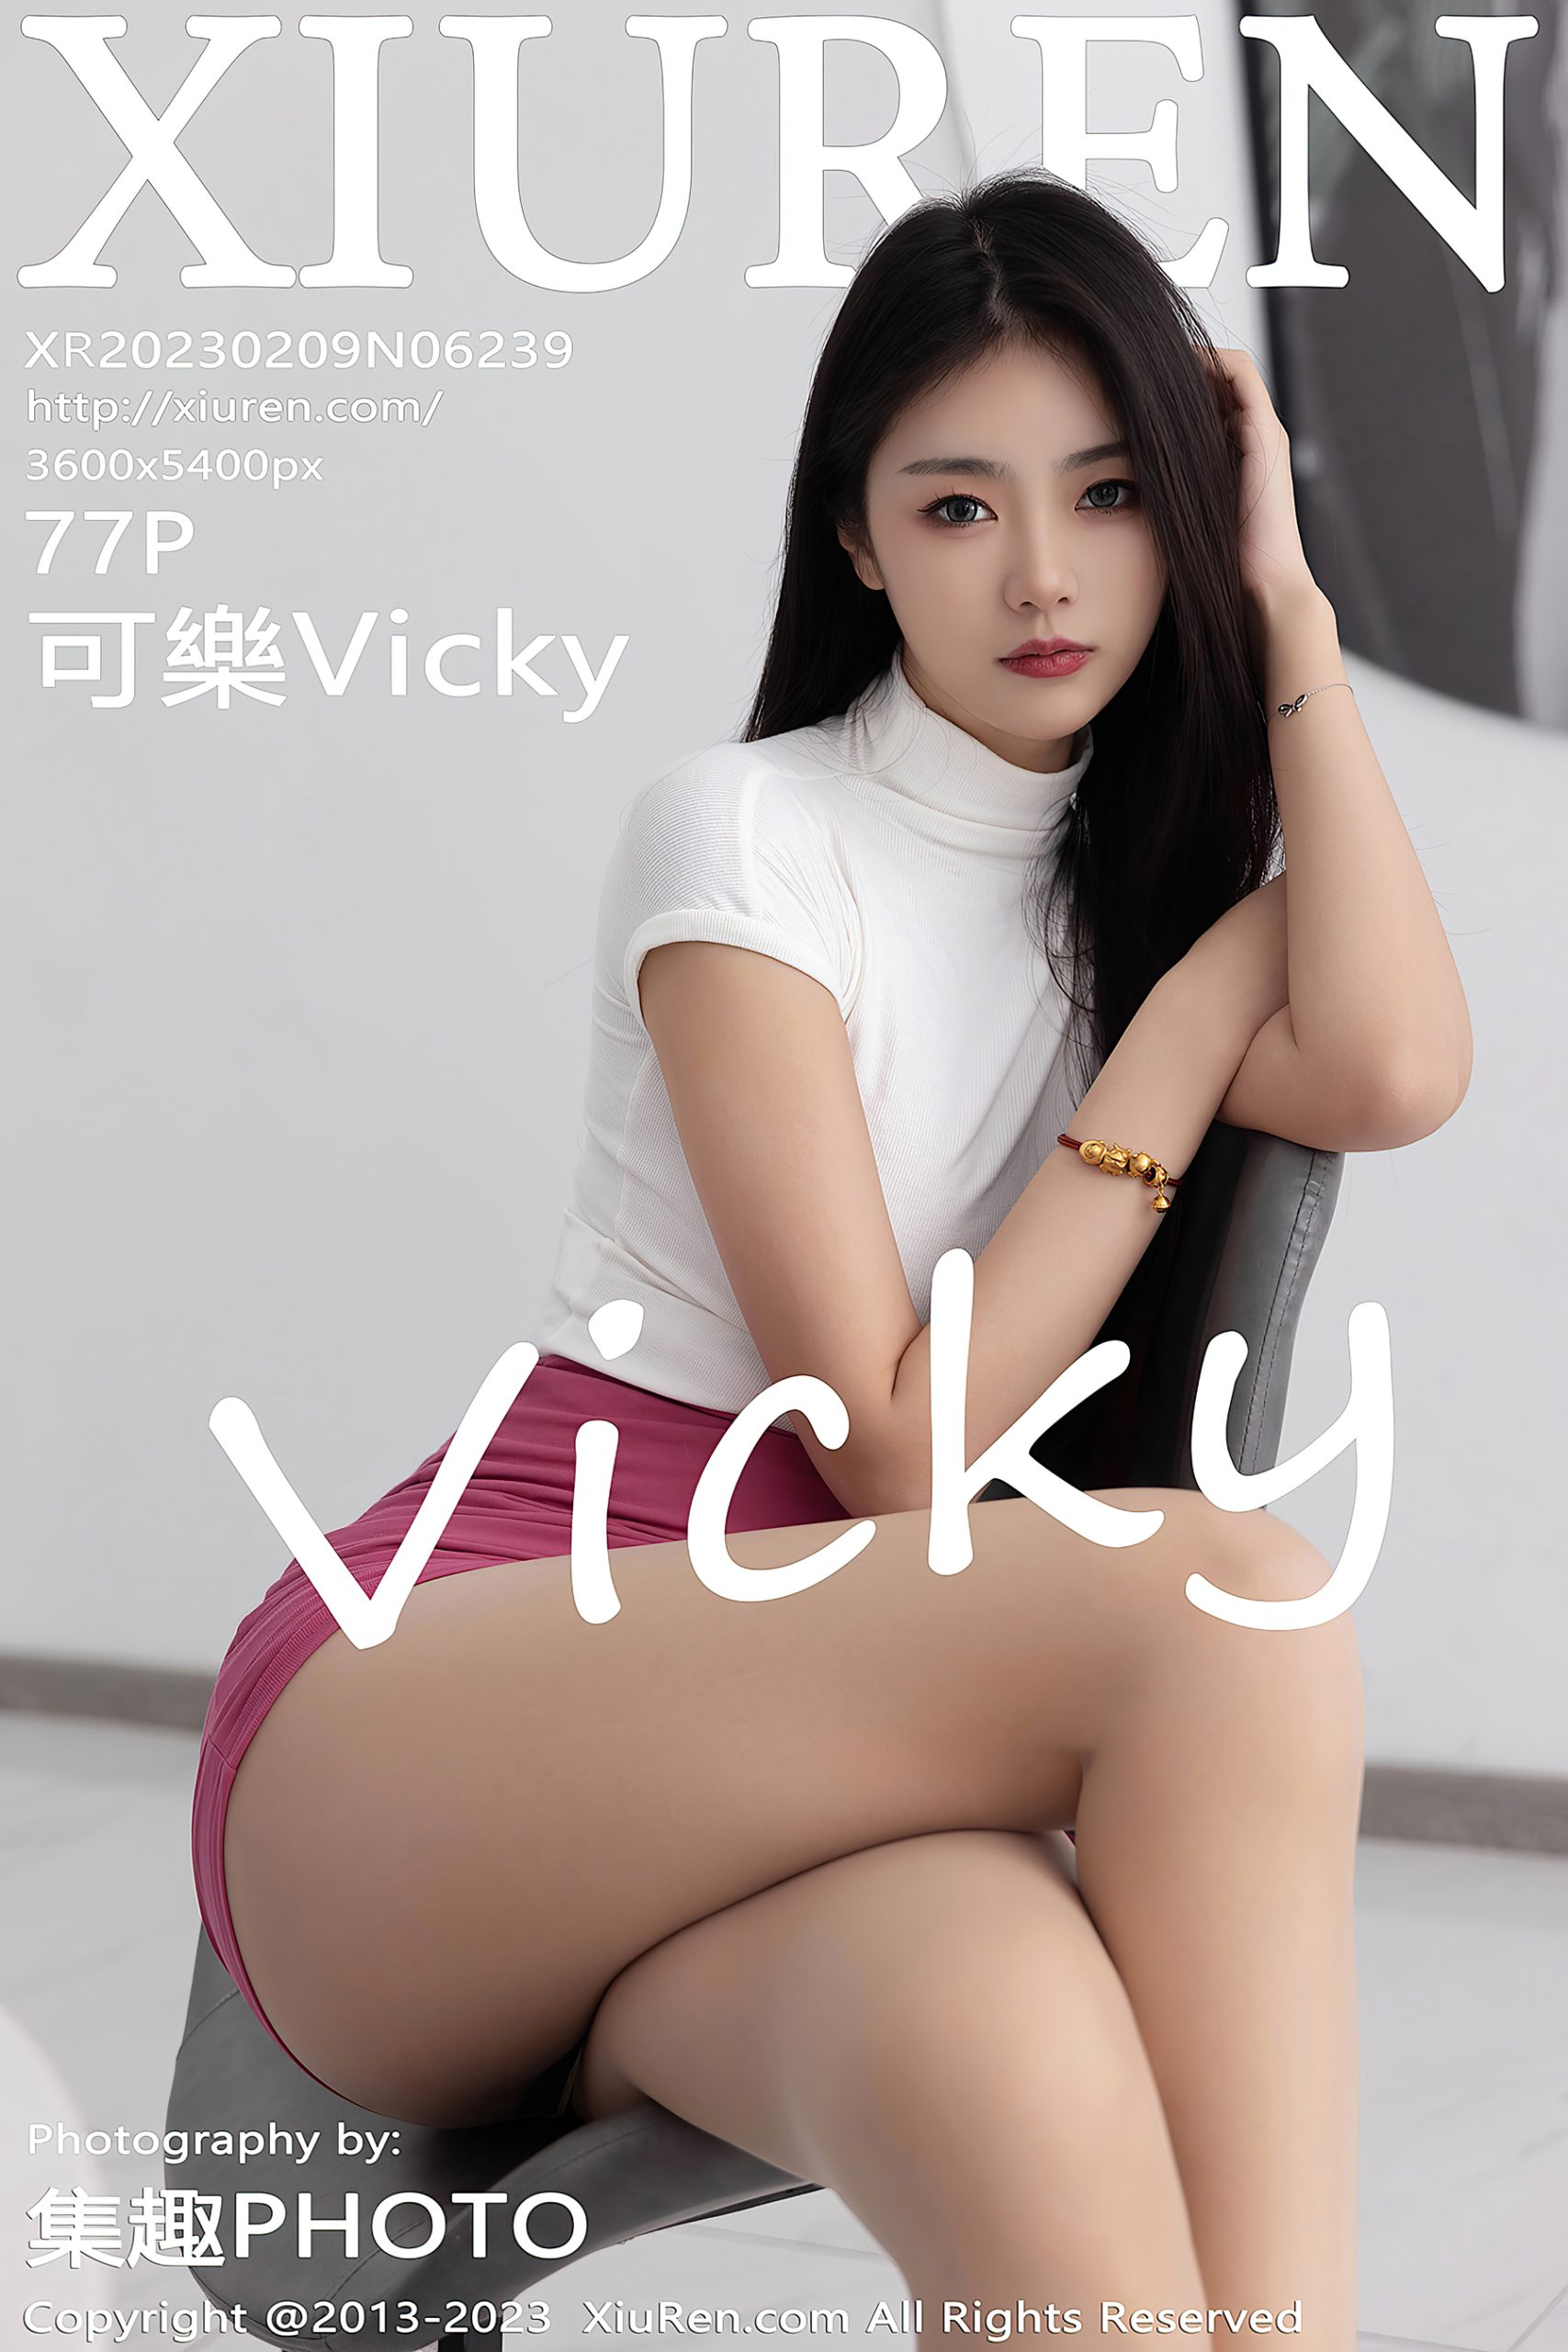 [XiuRen秀人网]2023.02.09 NO.6239 可樂Vicky 摄影图集百度云下载